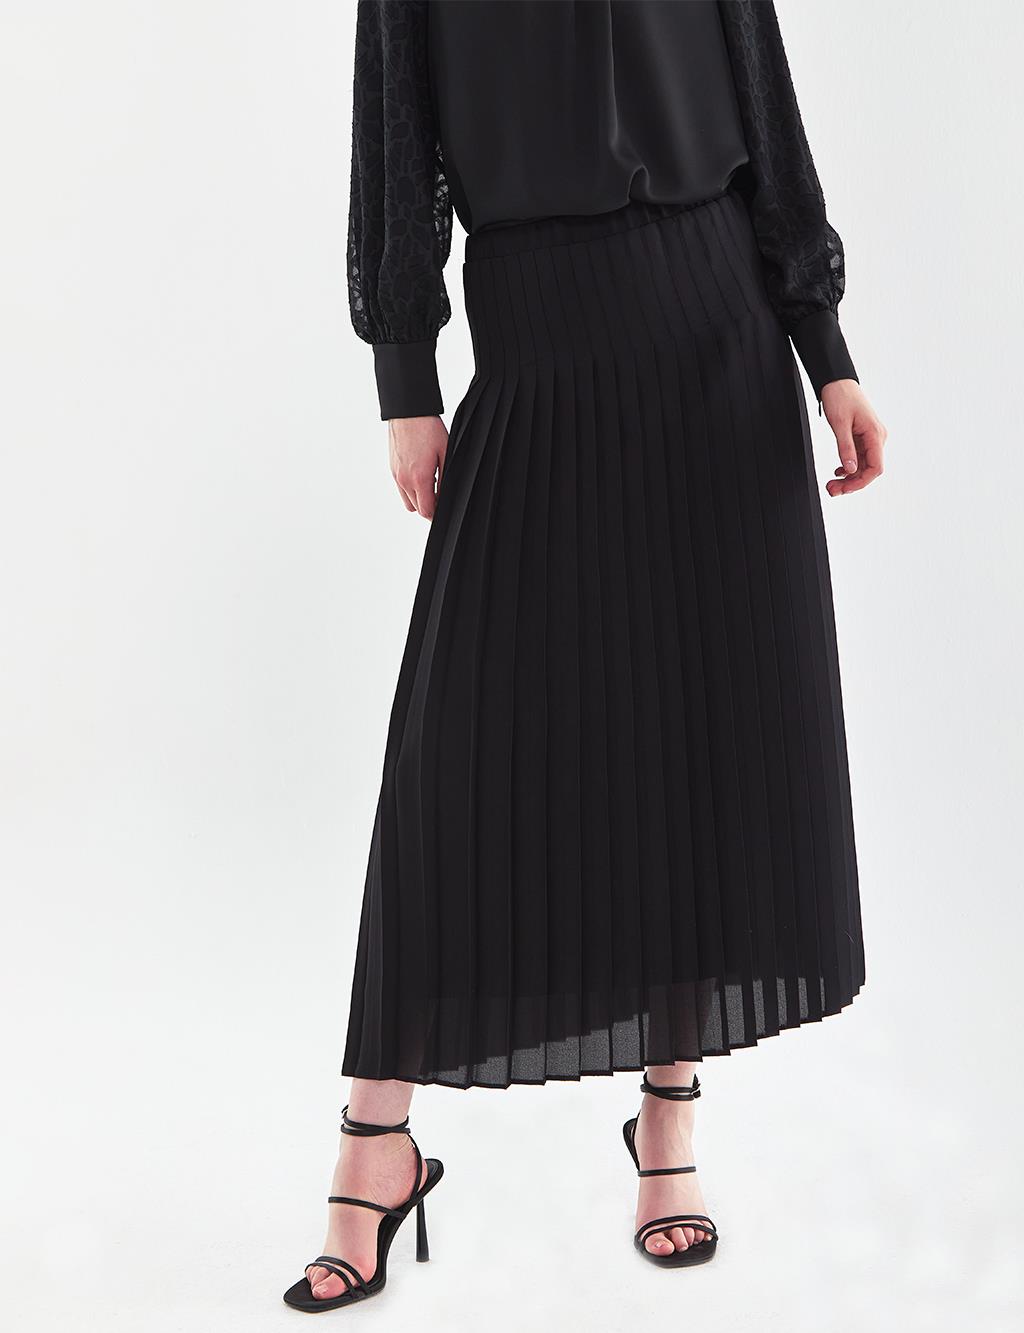 Плиссированная Юбка Черная Kayra плиссированная юбка на пуговицах цвета бежевого песка kayra